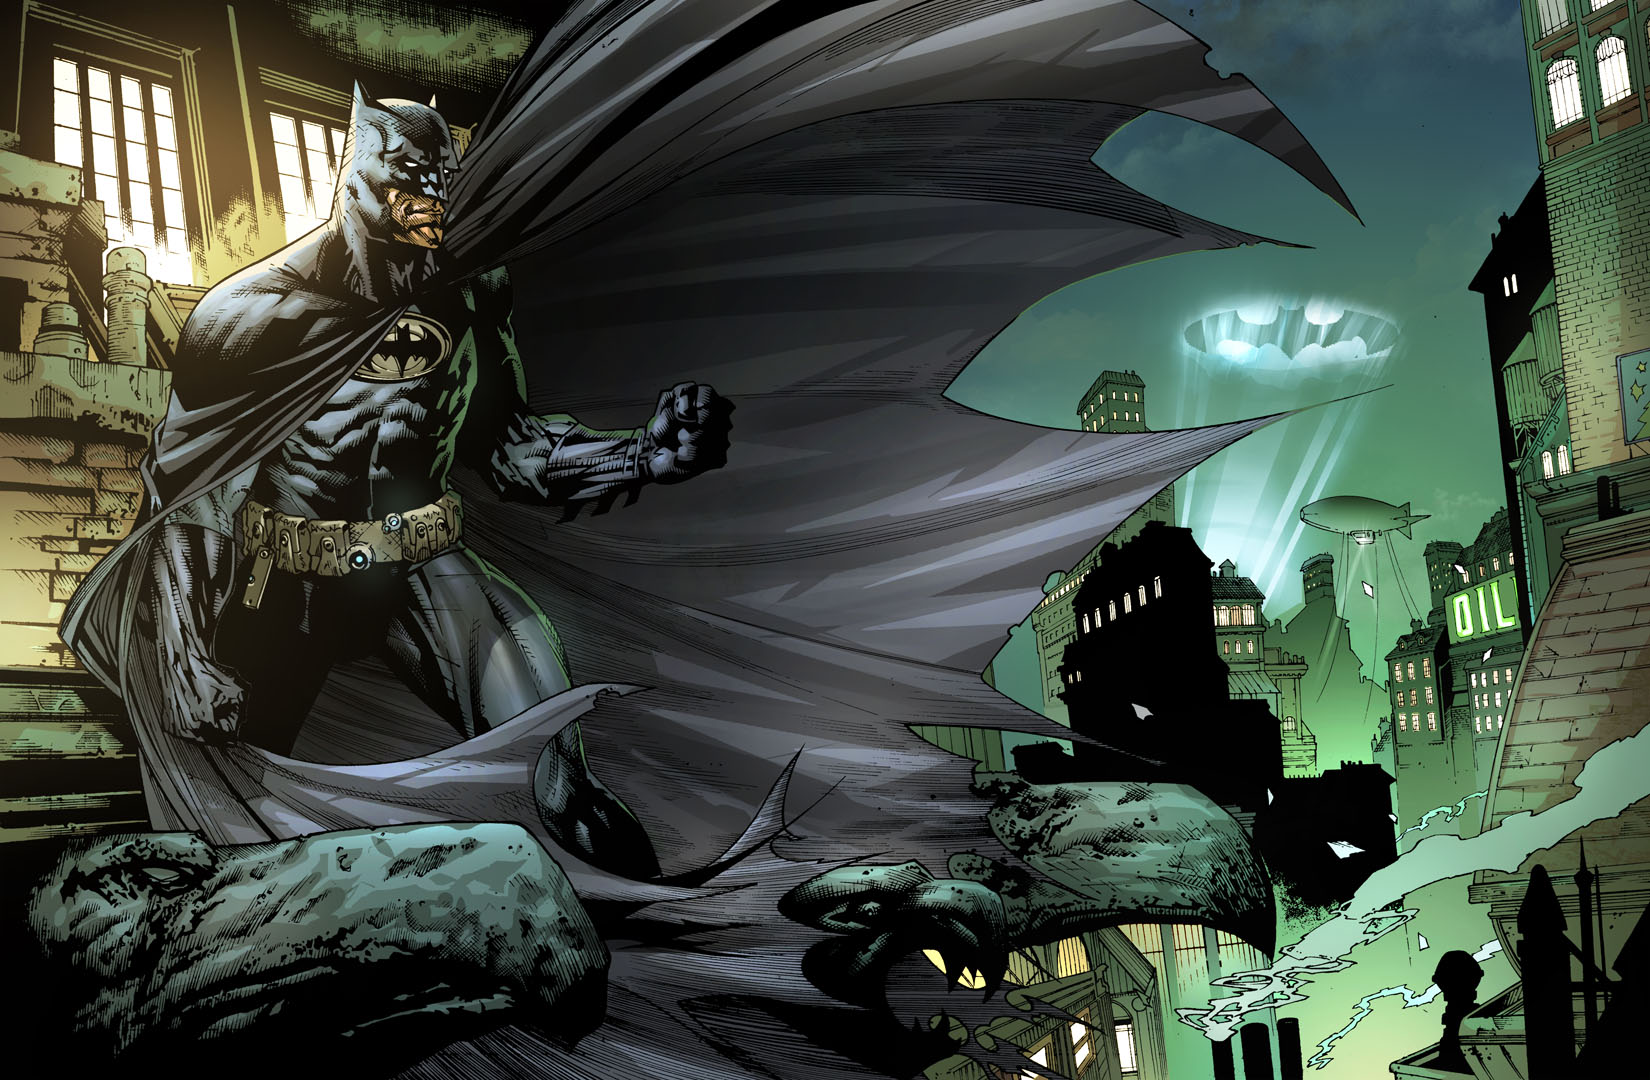 Batman in Gotham City by xavor85